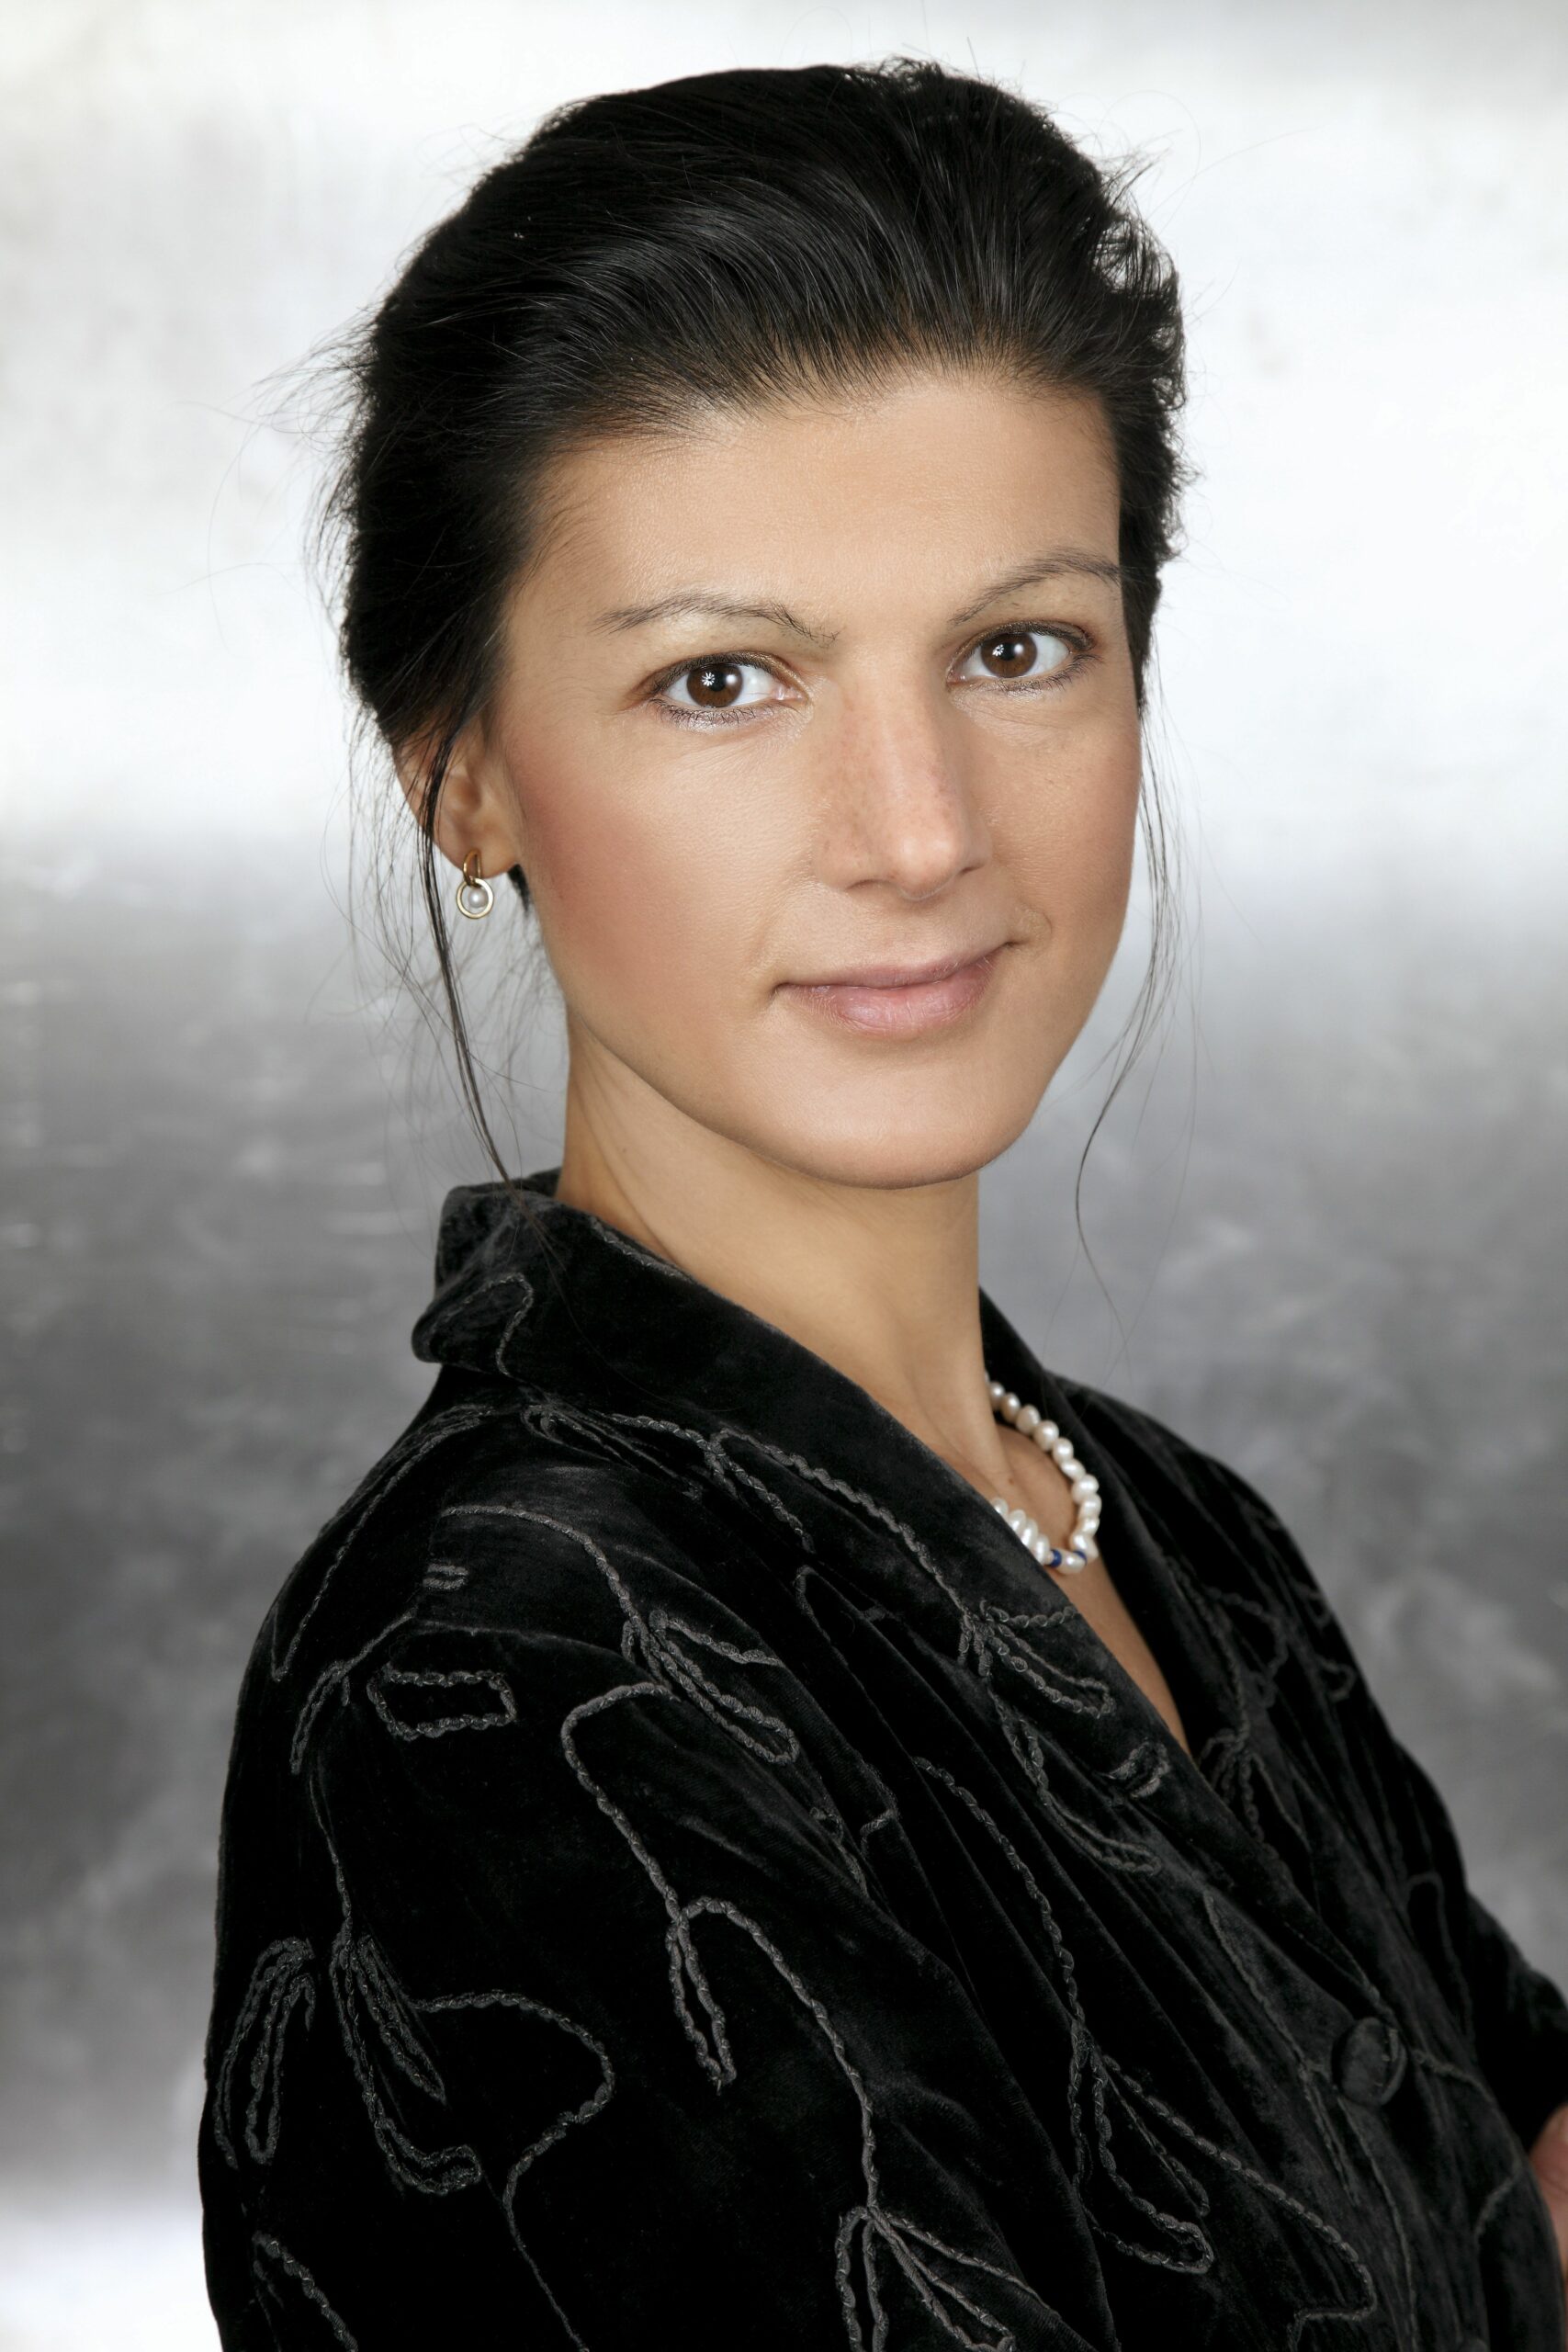 Sahra Wagenknecht schwer krank